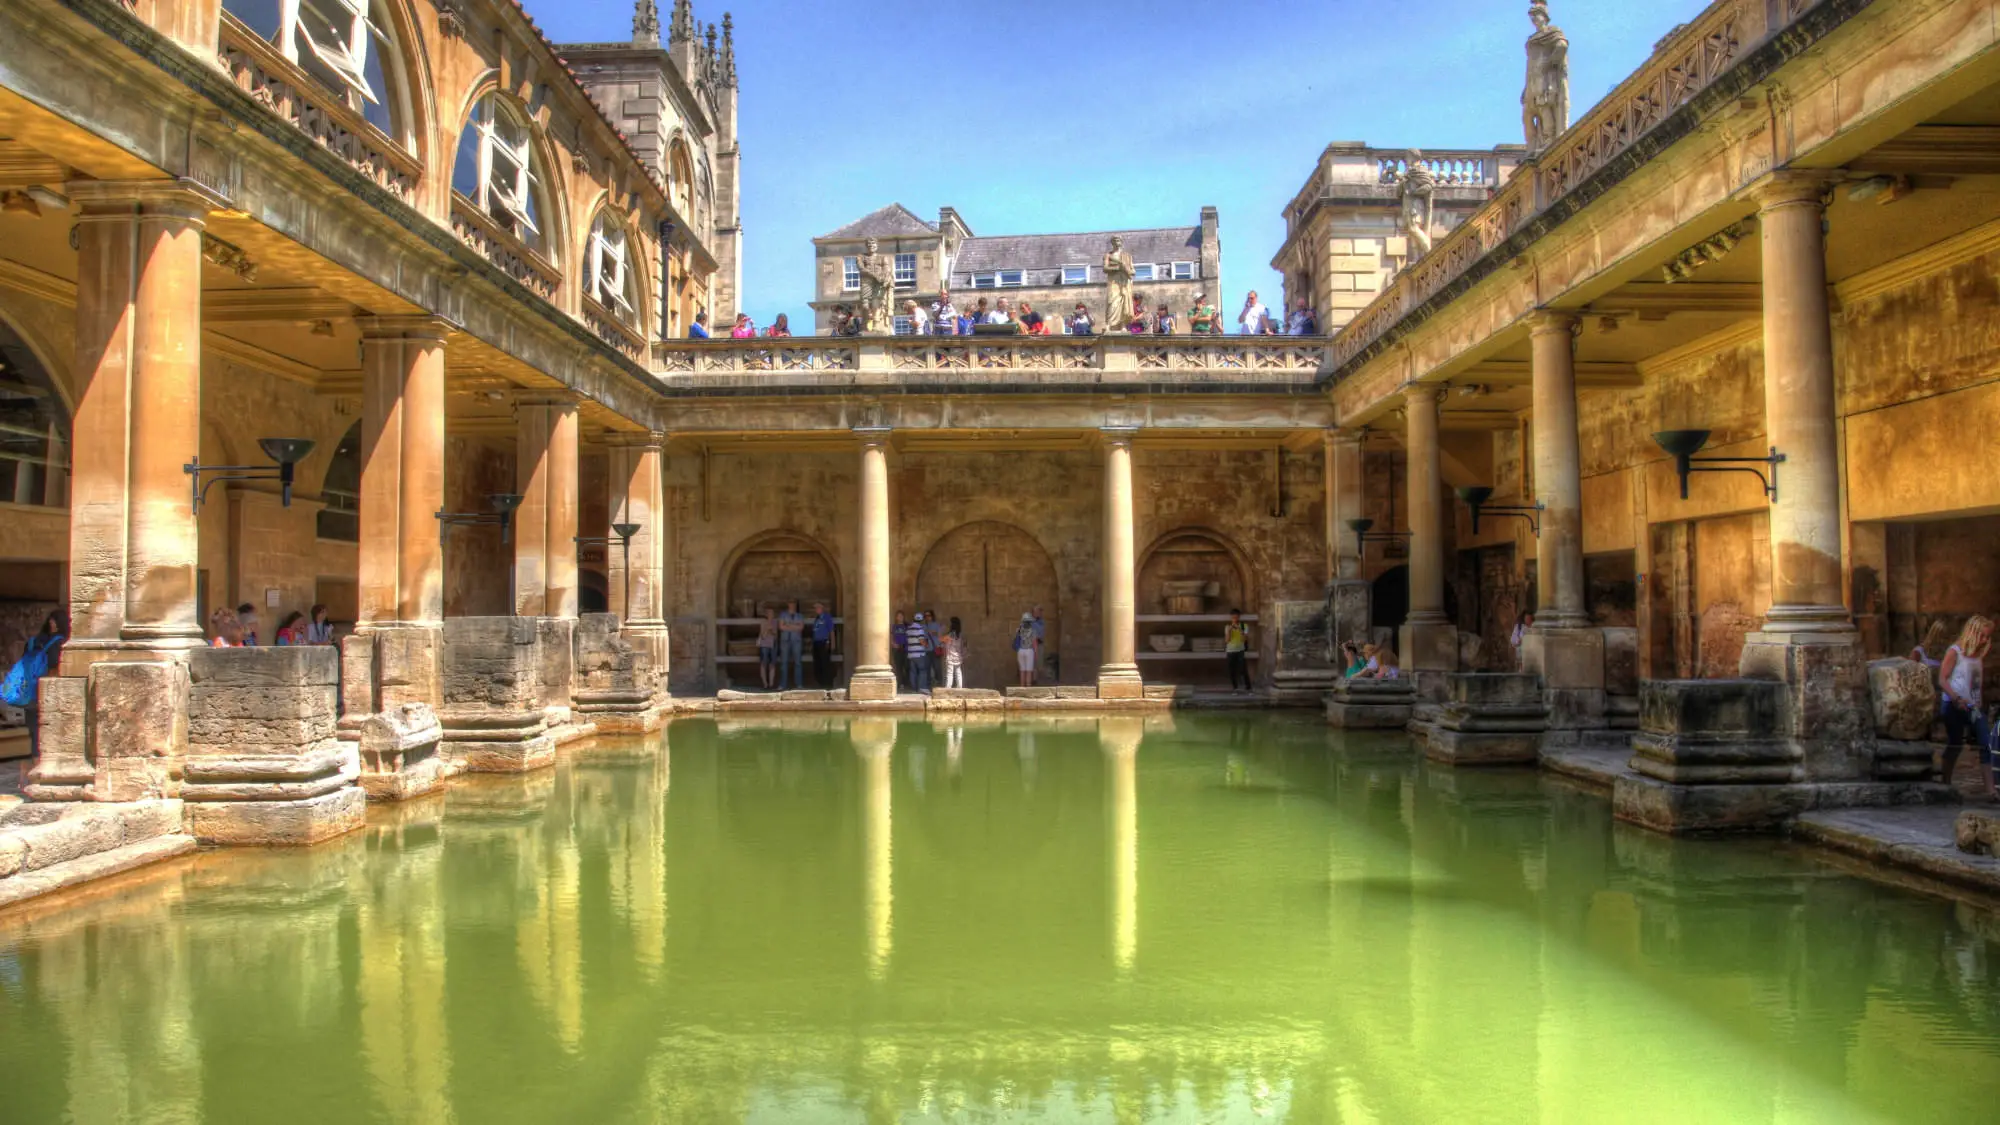 Vizitati Bath! Unul dintre cele mai romantice orase din Anglia